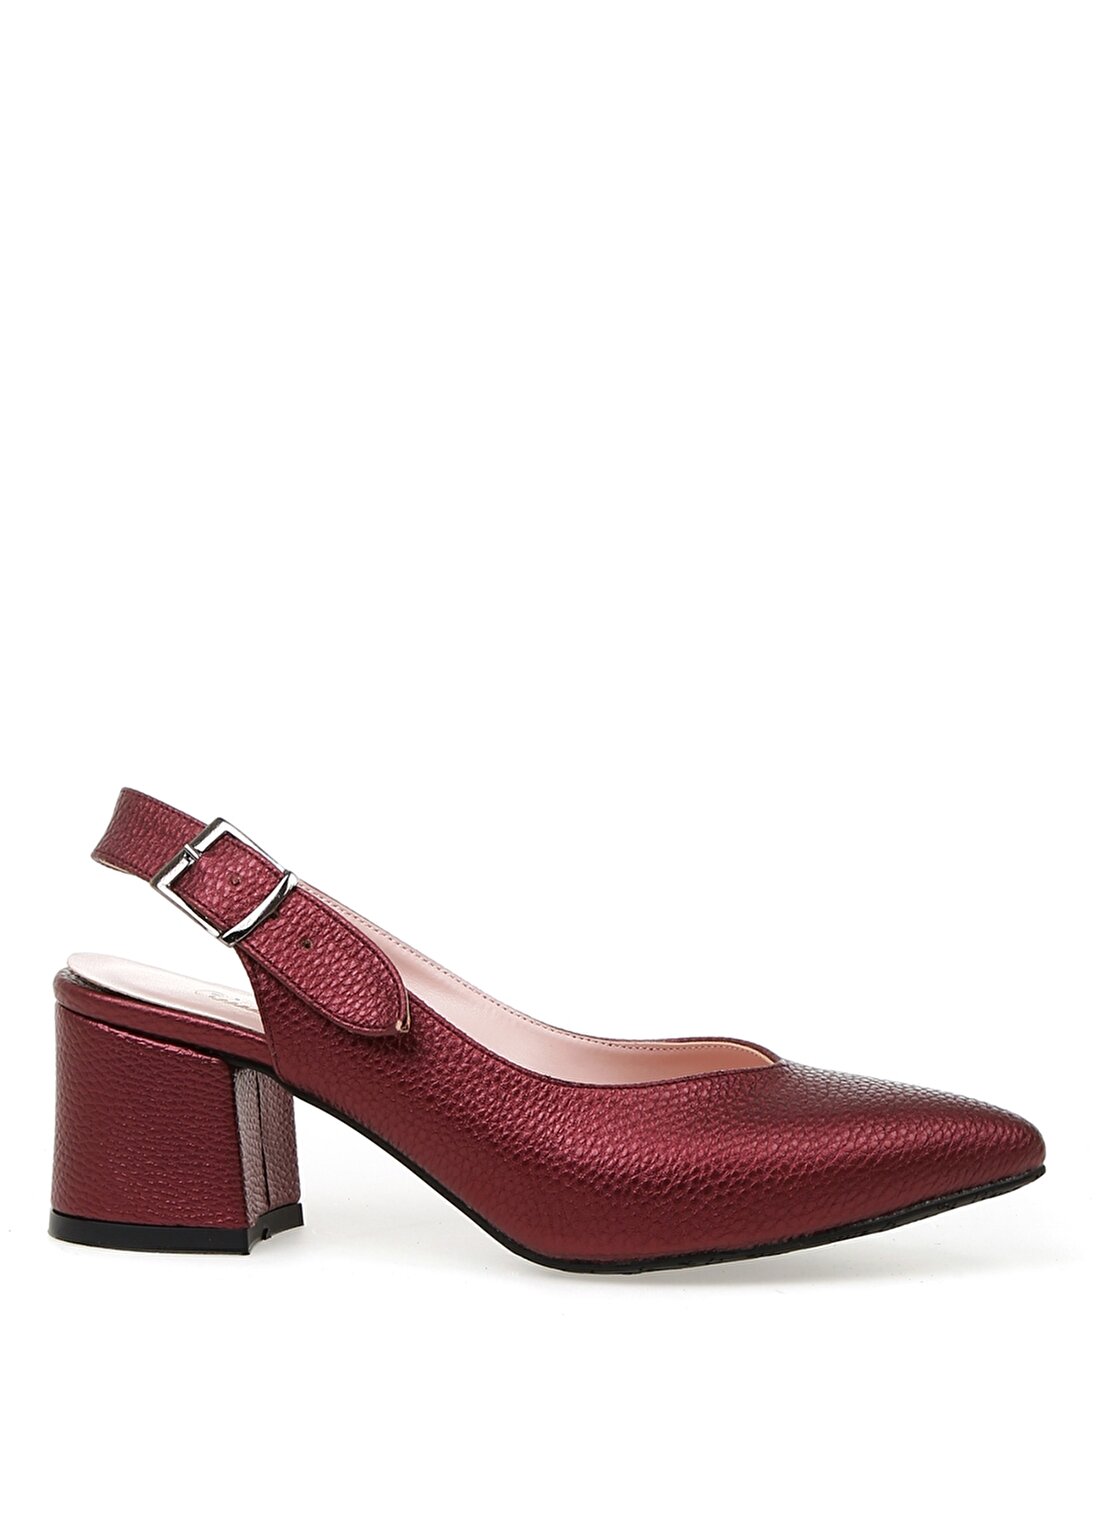 Pierre Cardin 54060 Yazlık Bordo Kadın Topuklu Ayakkabı